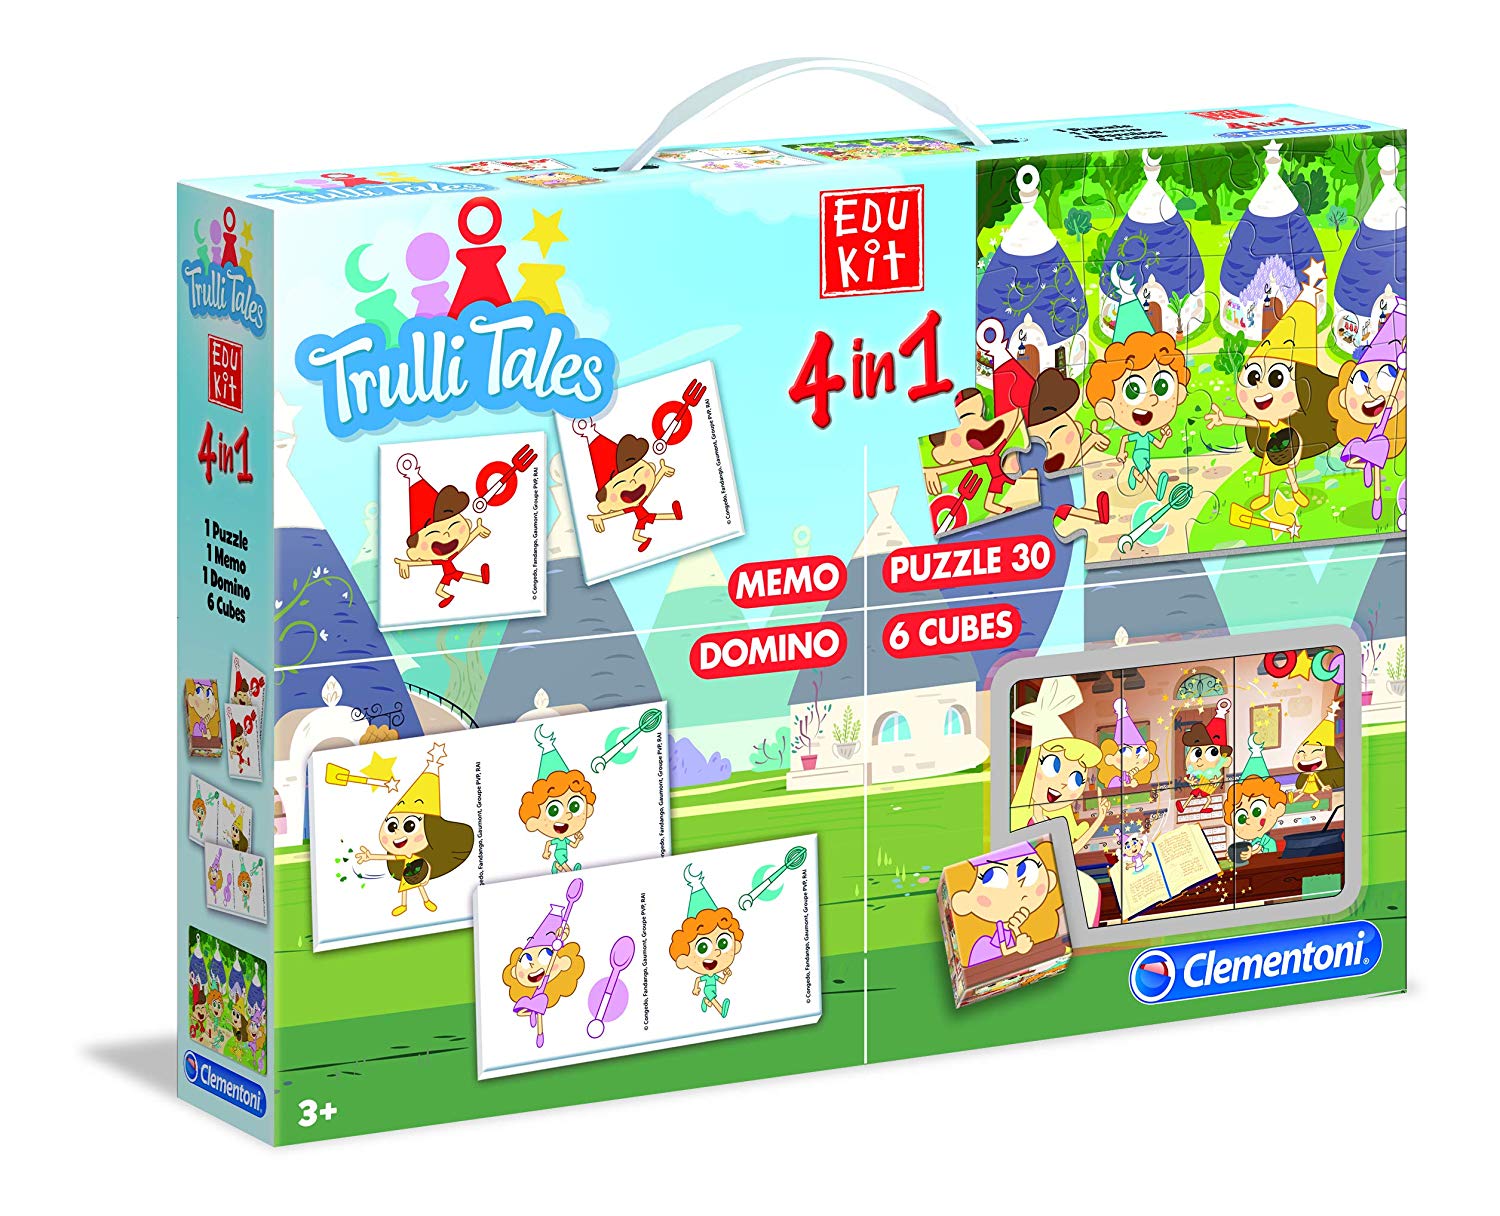 Trulli Tales giocattoli giochi preziosi bambini regali di natale - regalo compleanno - Clementoni- Edukit 4 in 1 Trulli Tales, Multicolore